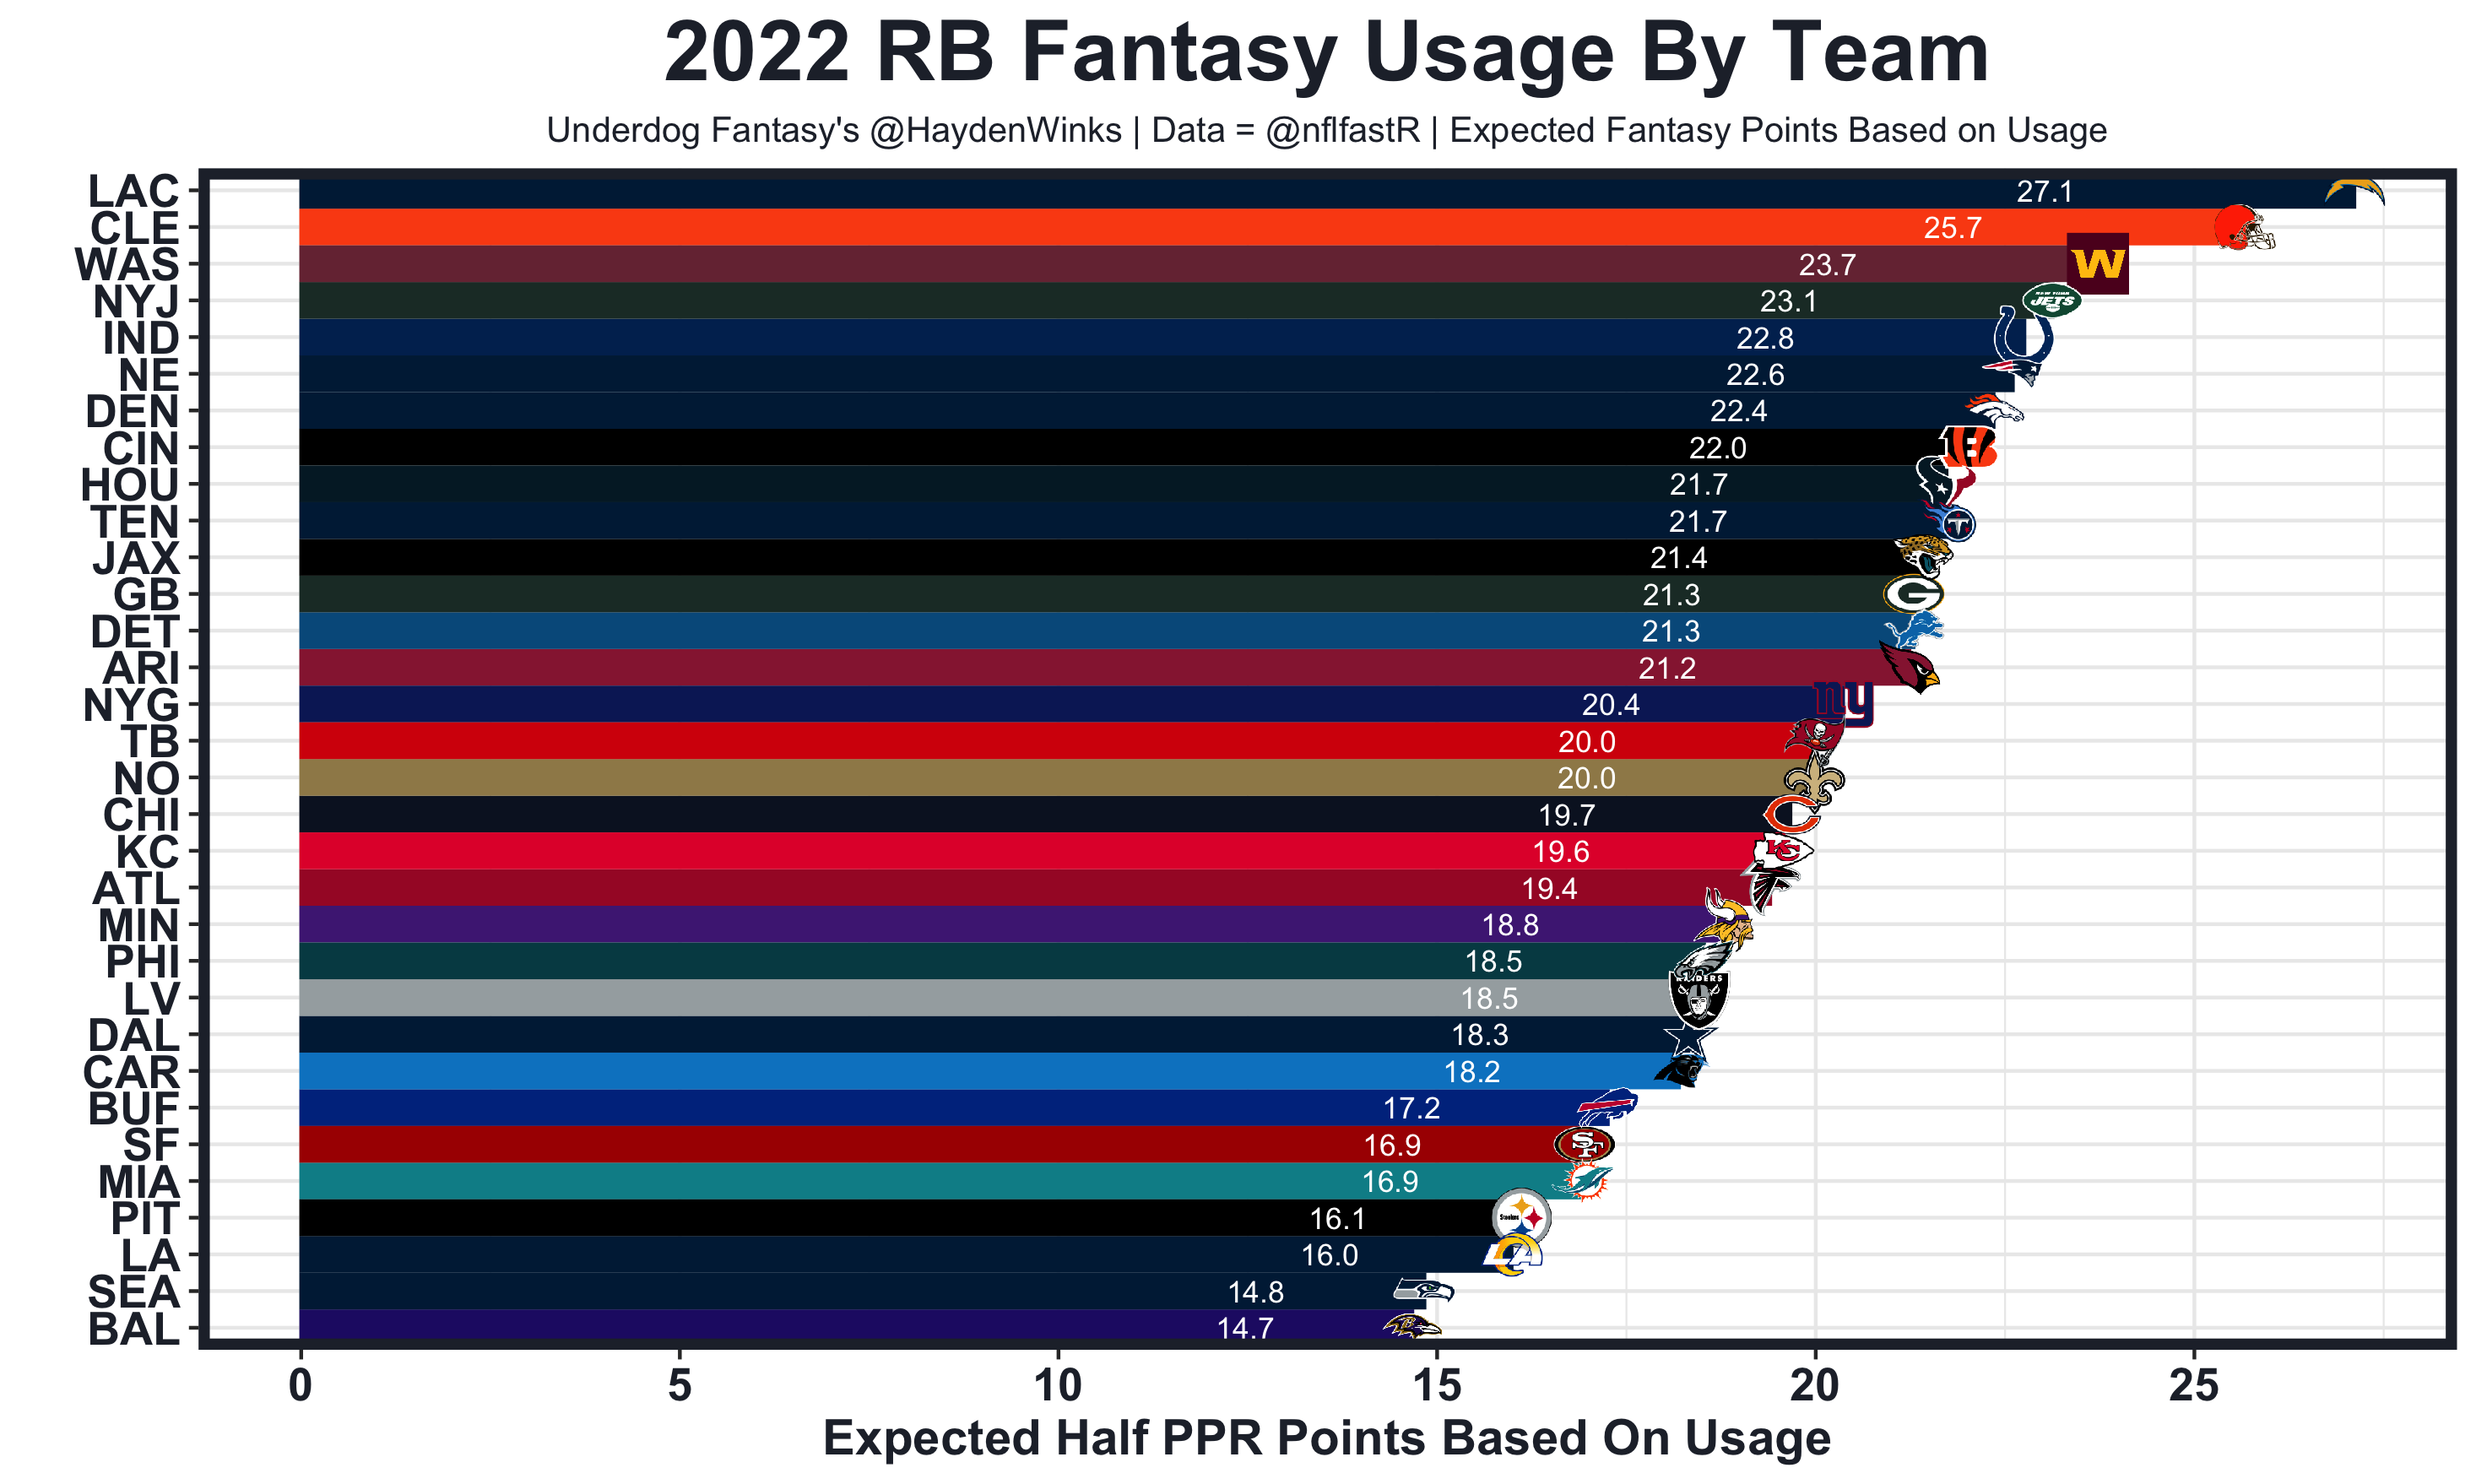 Week 9 Fantasy PPR RB Rankings